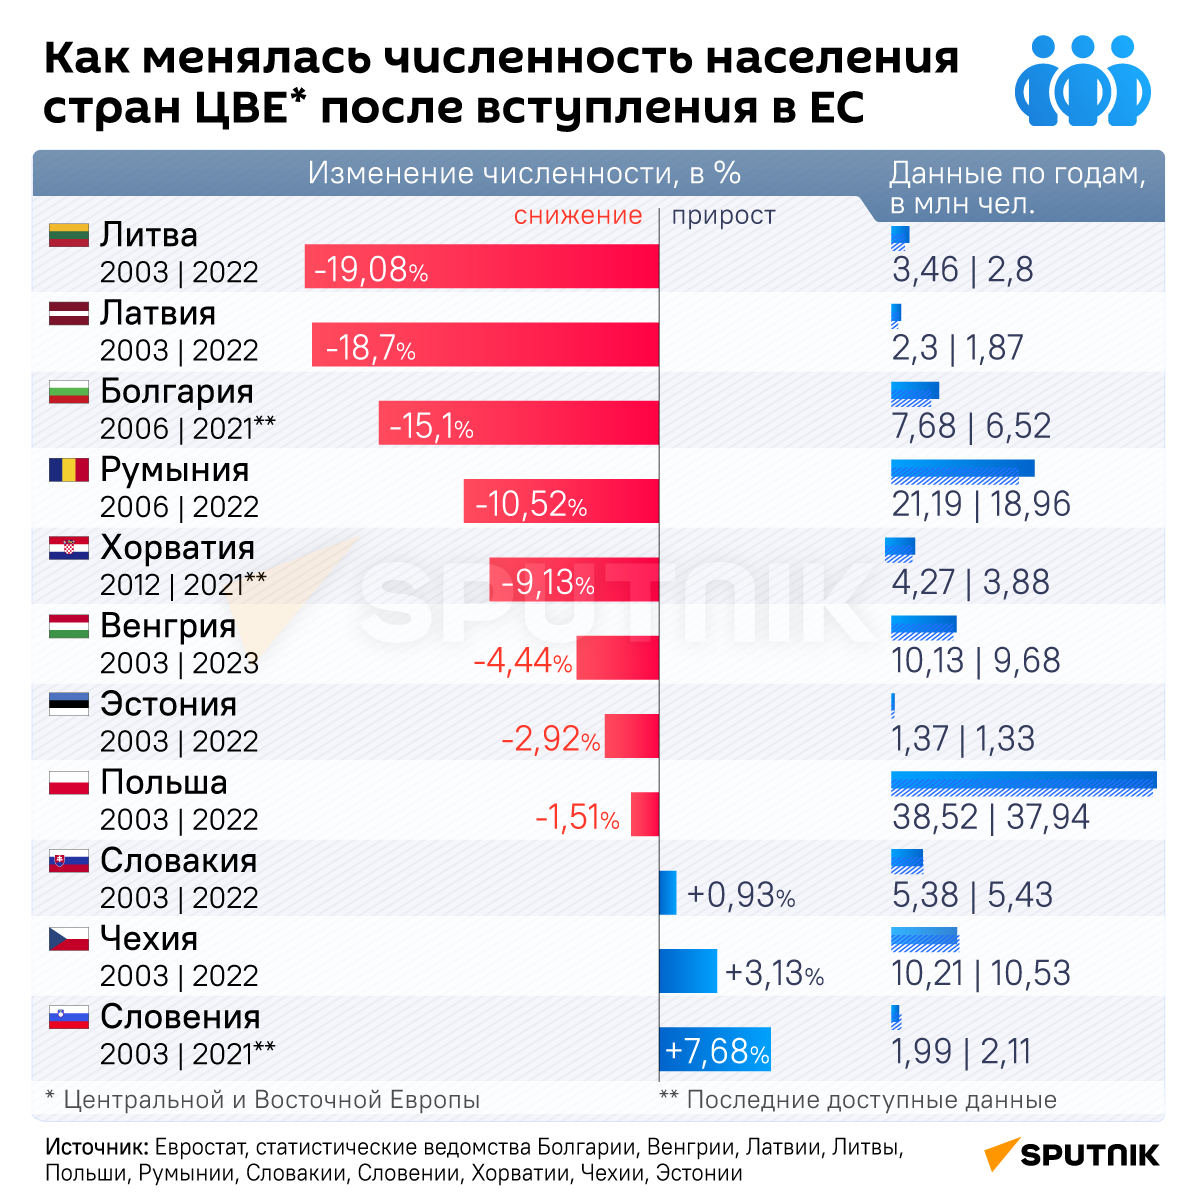 Как менялась численность населения стран Центральной и Восточной Европы после вступления в ЕС инфографика - Sputnik Узбекистан